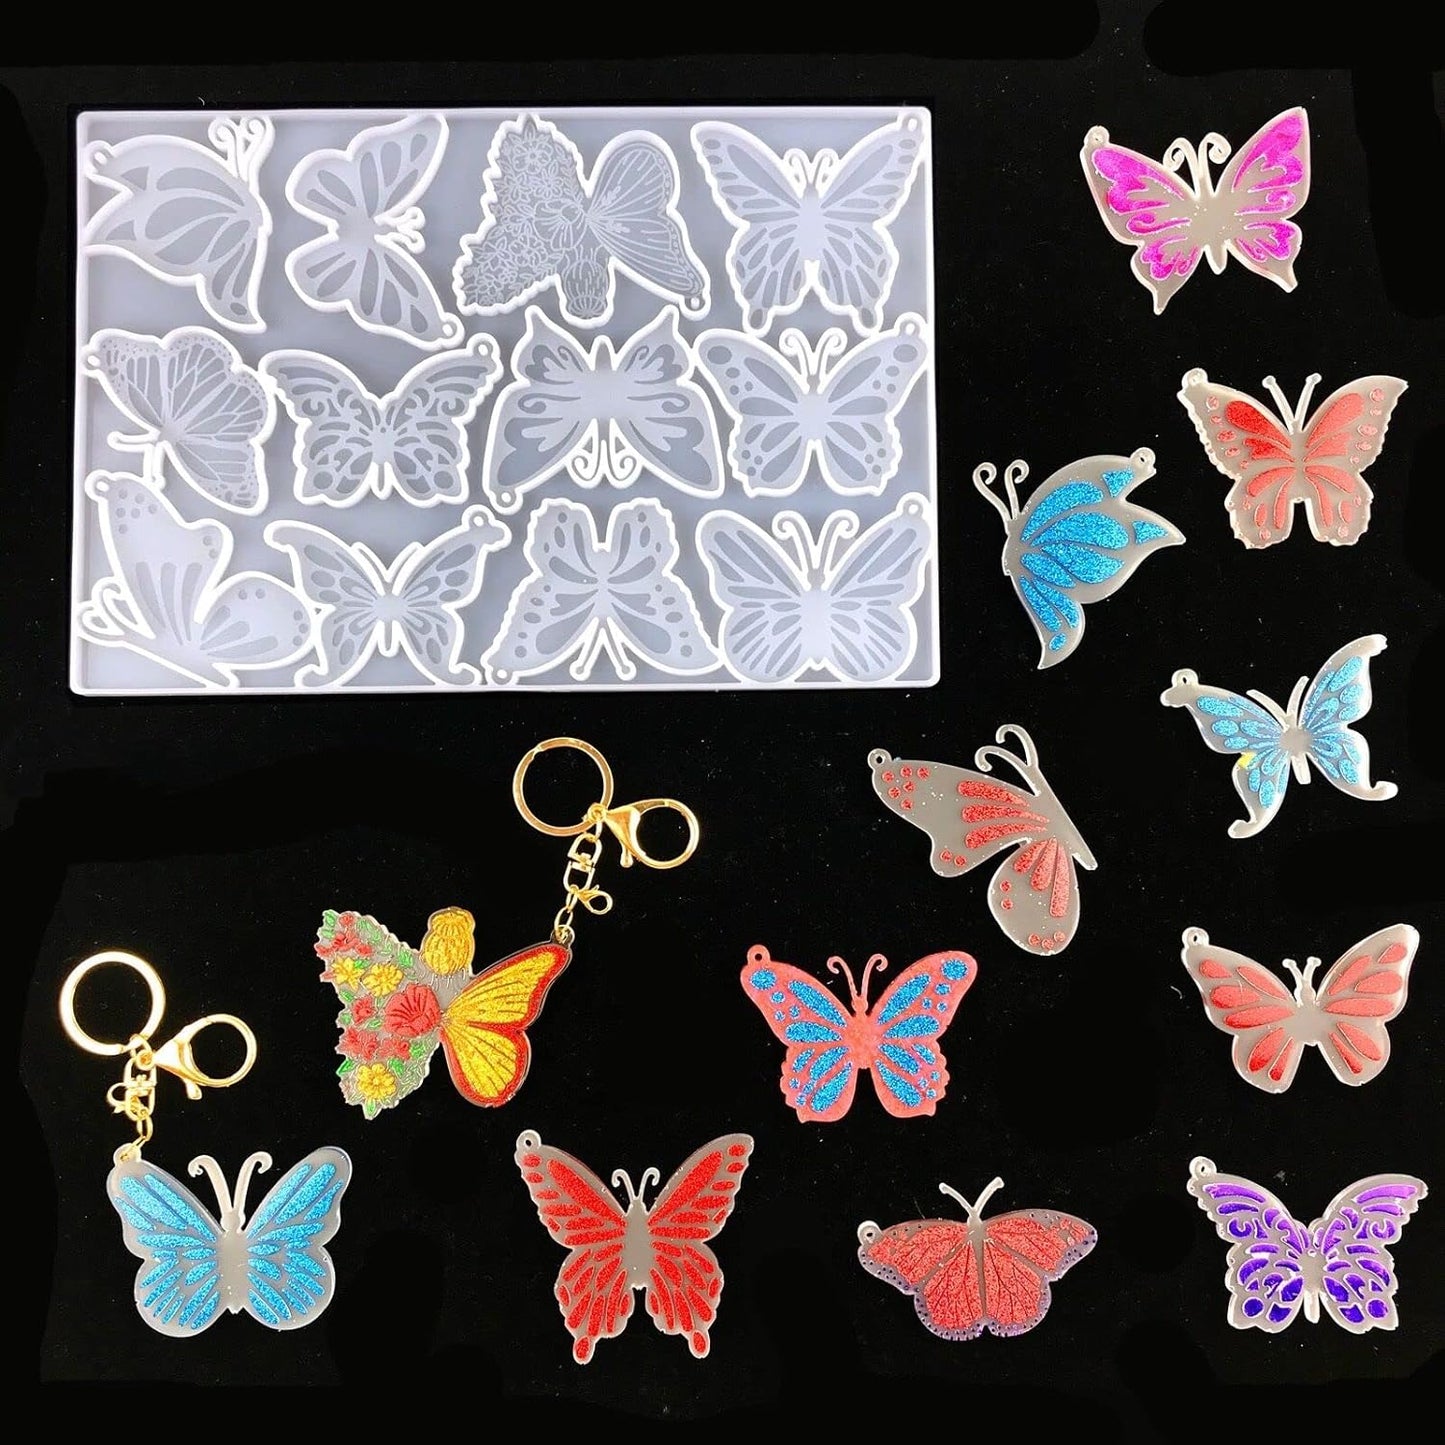 قالب سيليكون ابيض مستورد (12) شكل مختلف من الفراشات يستخدم فى اعمال الريزن و الهاند ميد